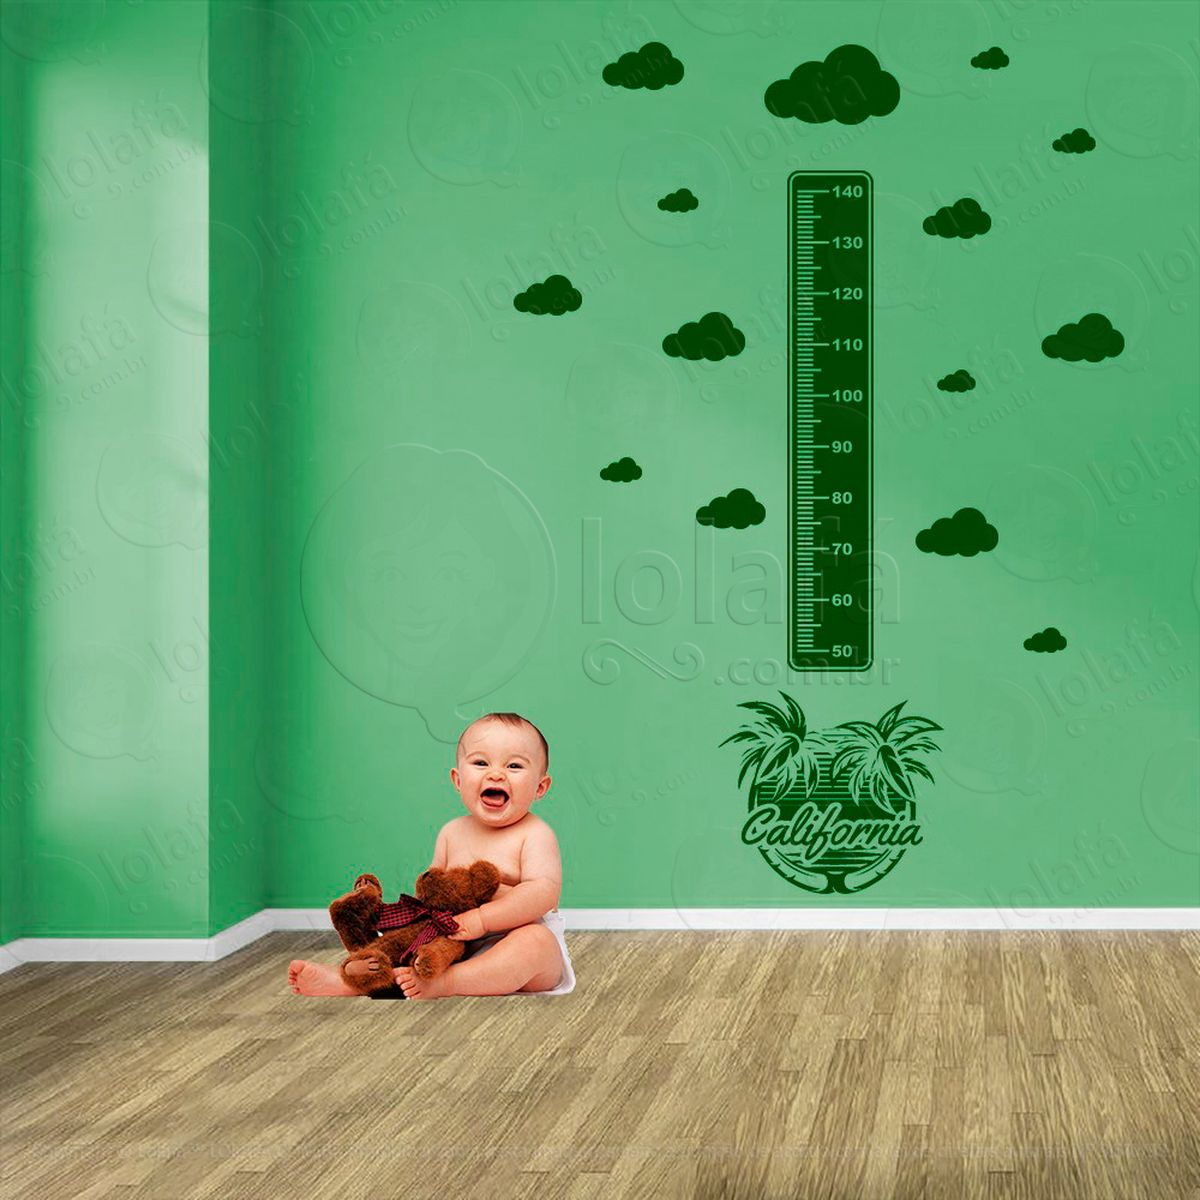 surf e nuvens adesivo régua de crescimento infantil, medidor de altura para quarto, porta e parede - mod:433